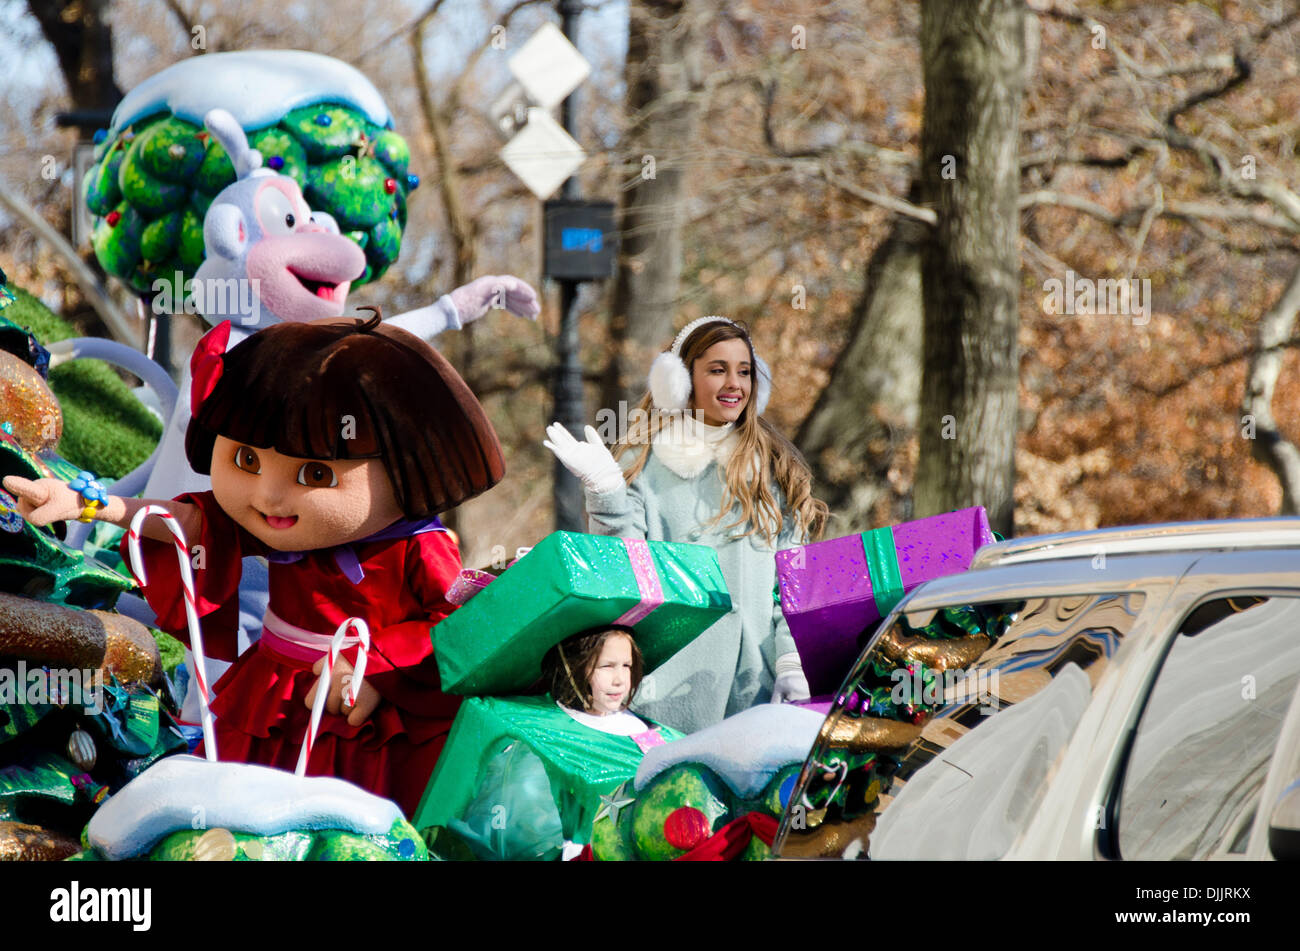 NEW YORK, NY, USA, le 28 novembre 2013. Ariana Grande courbes du Dora the Explorer flotter dans le 87e rapport annuel de Macy's Thanksgiving Day Parade. Crédit : Jennifer Booher/Alamy Live News Banque D'Images